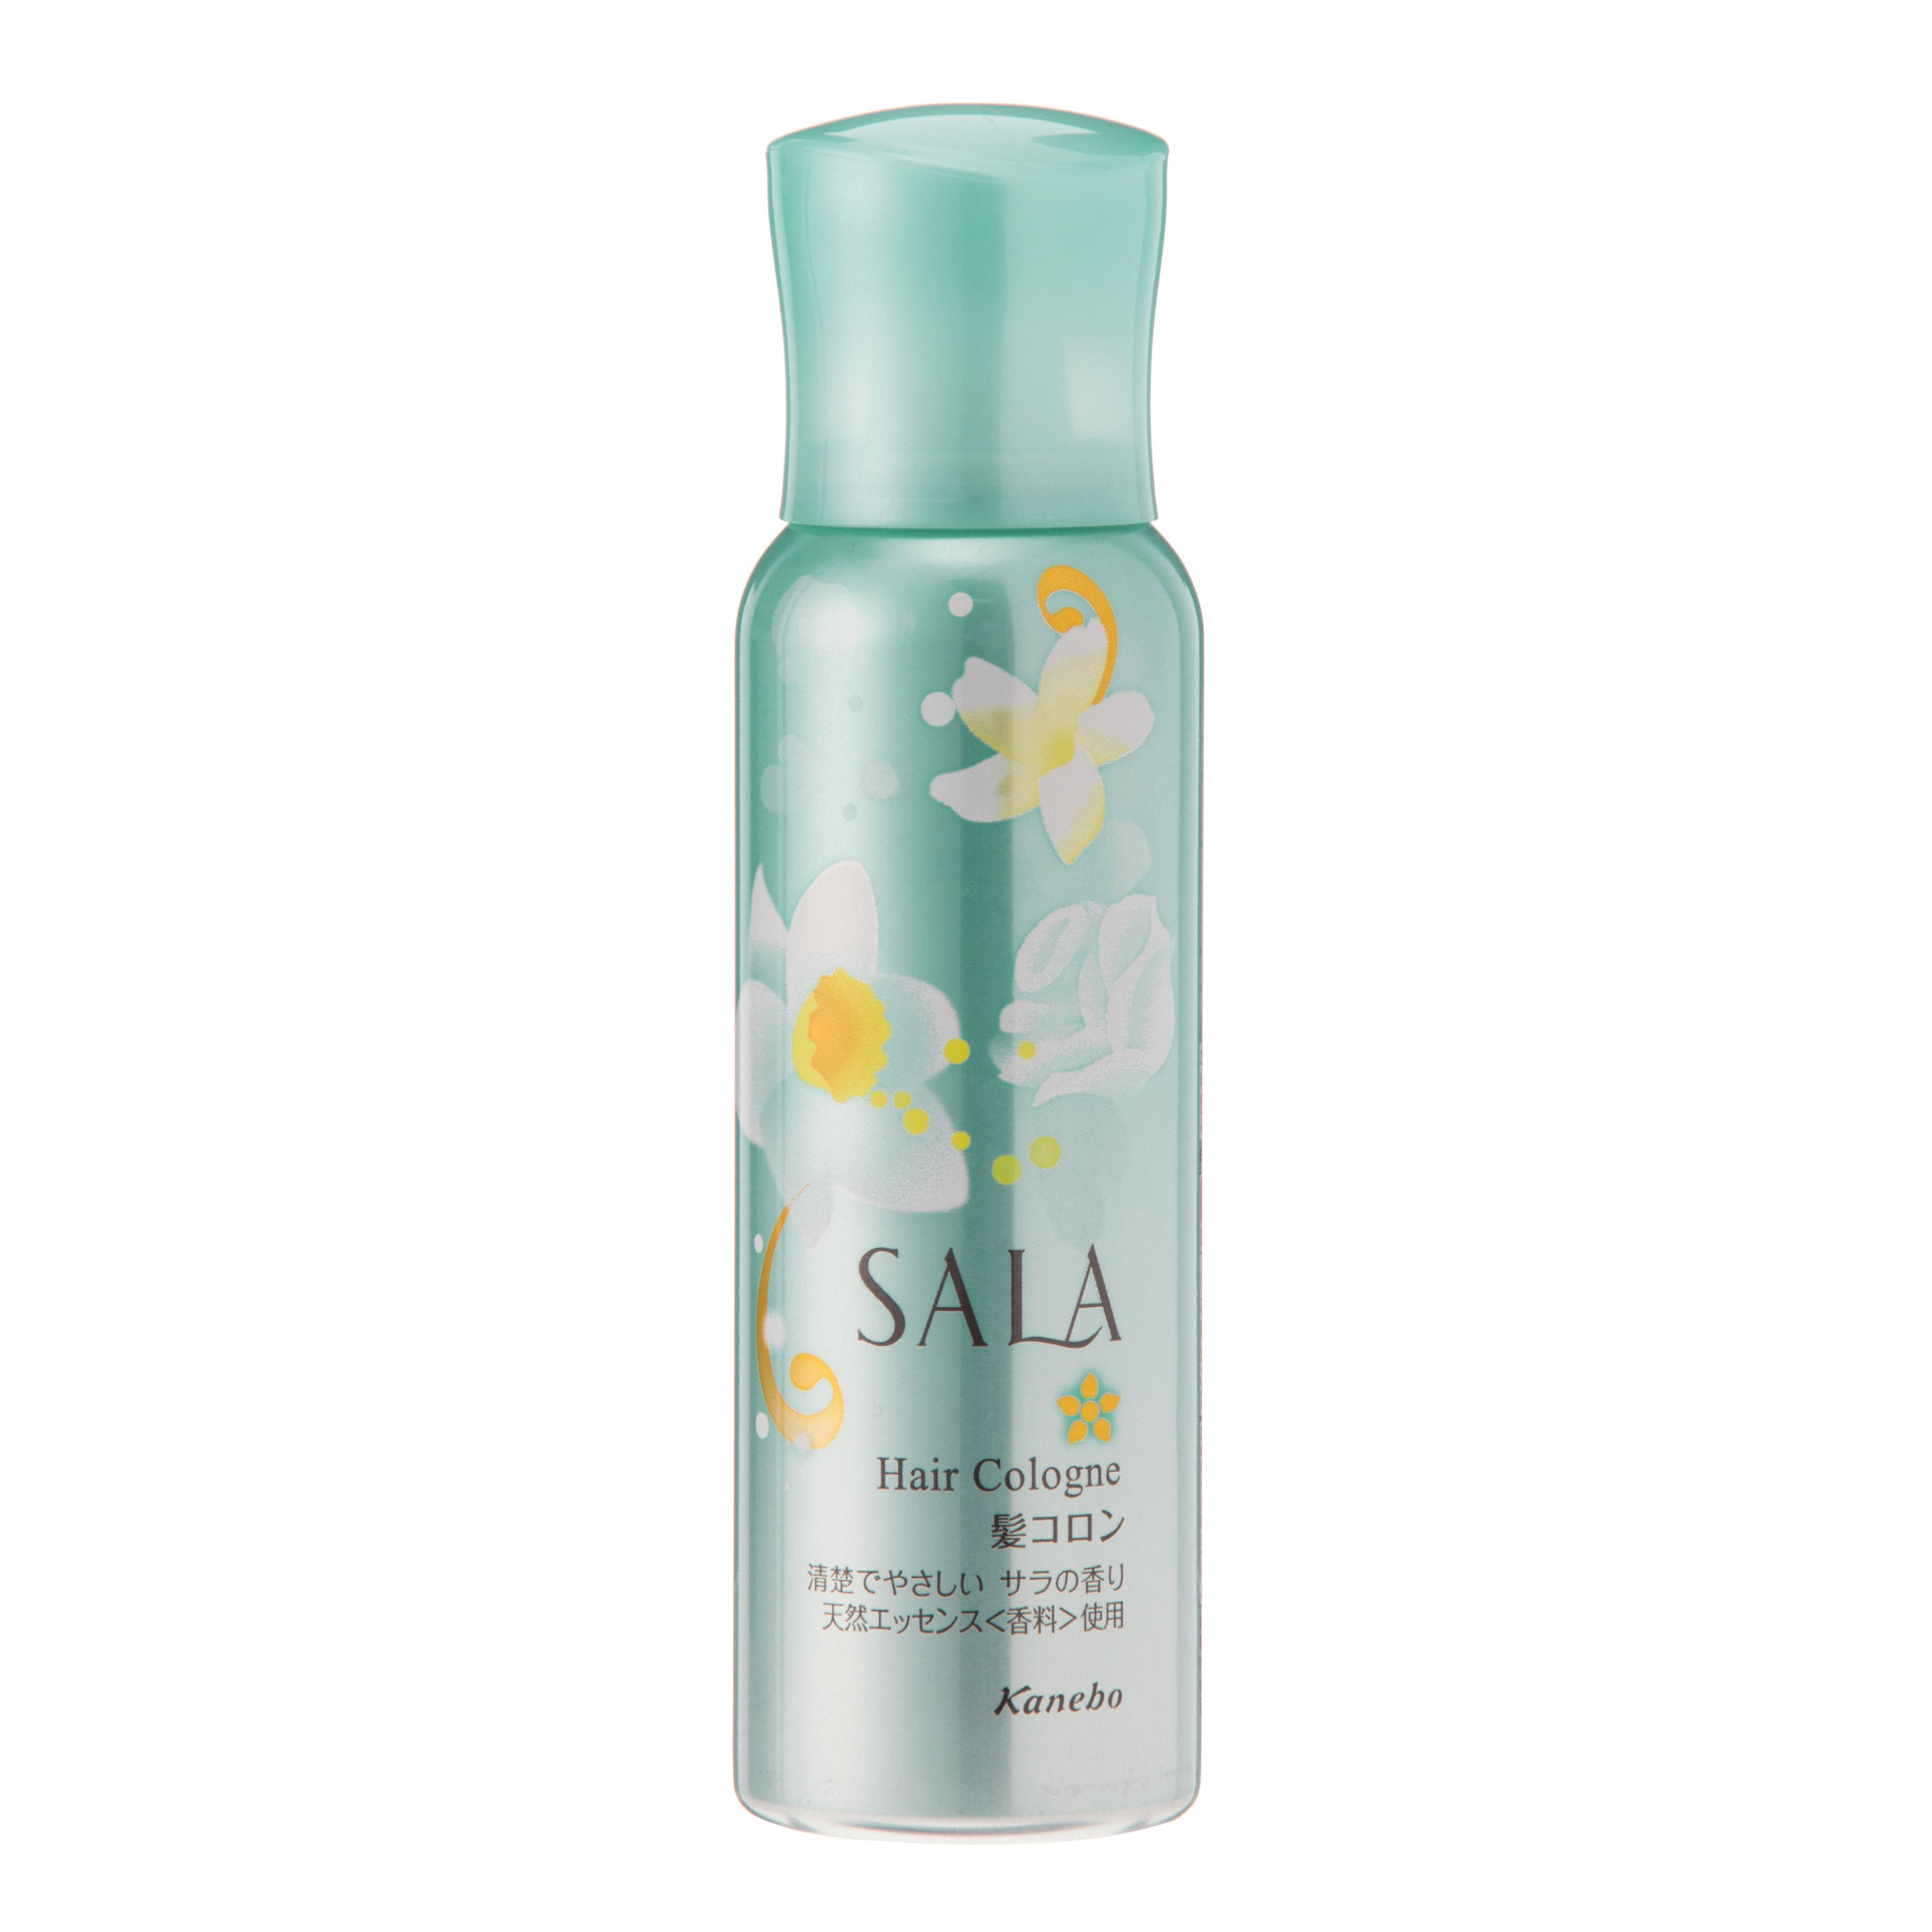 SALA サラ 髪コロンBサラの香り 80g×10本